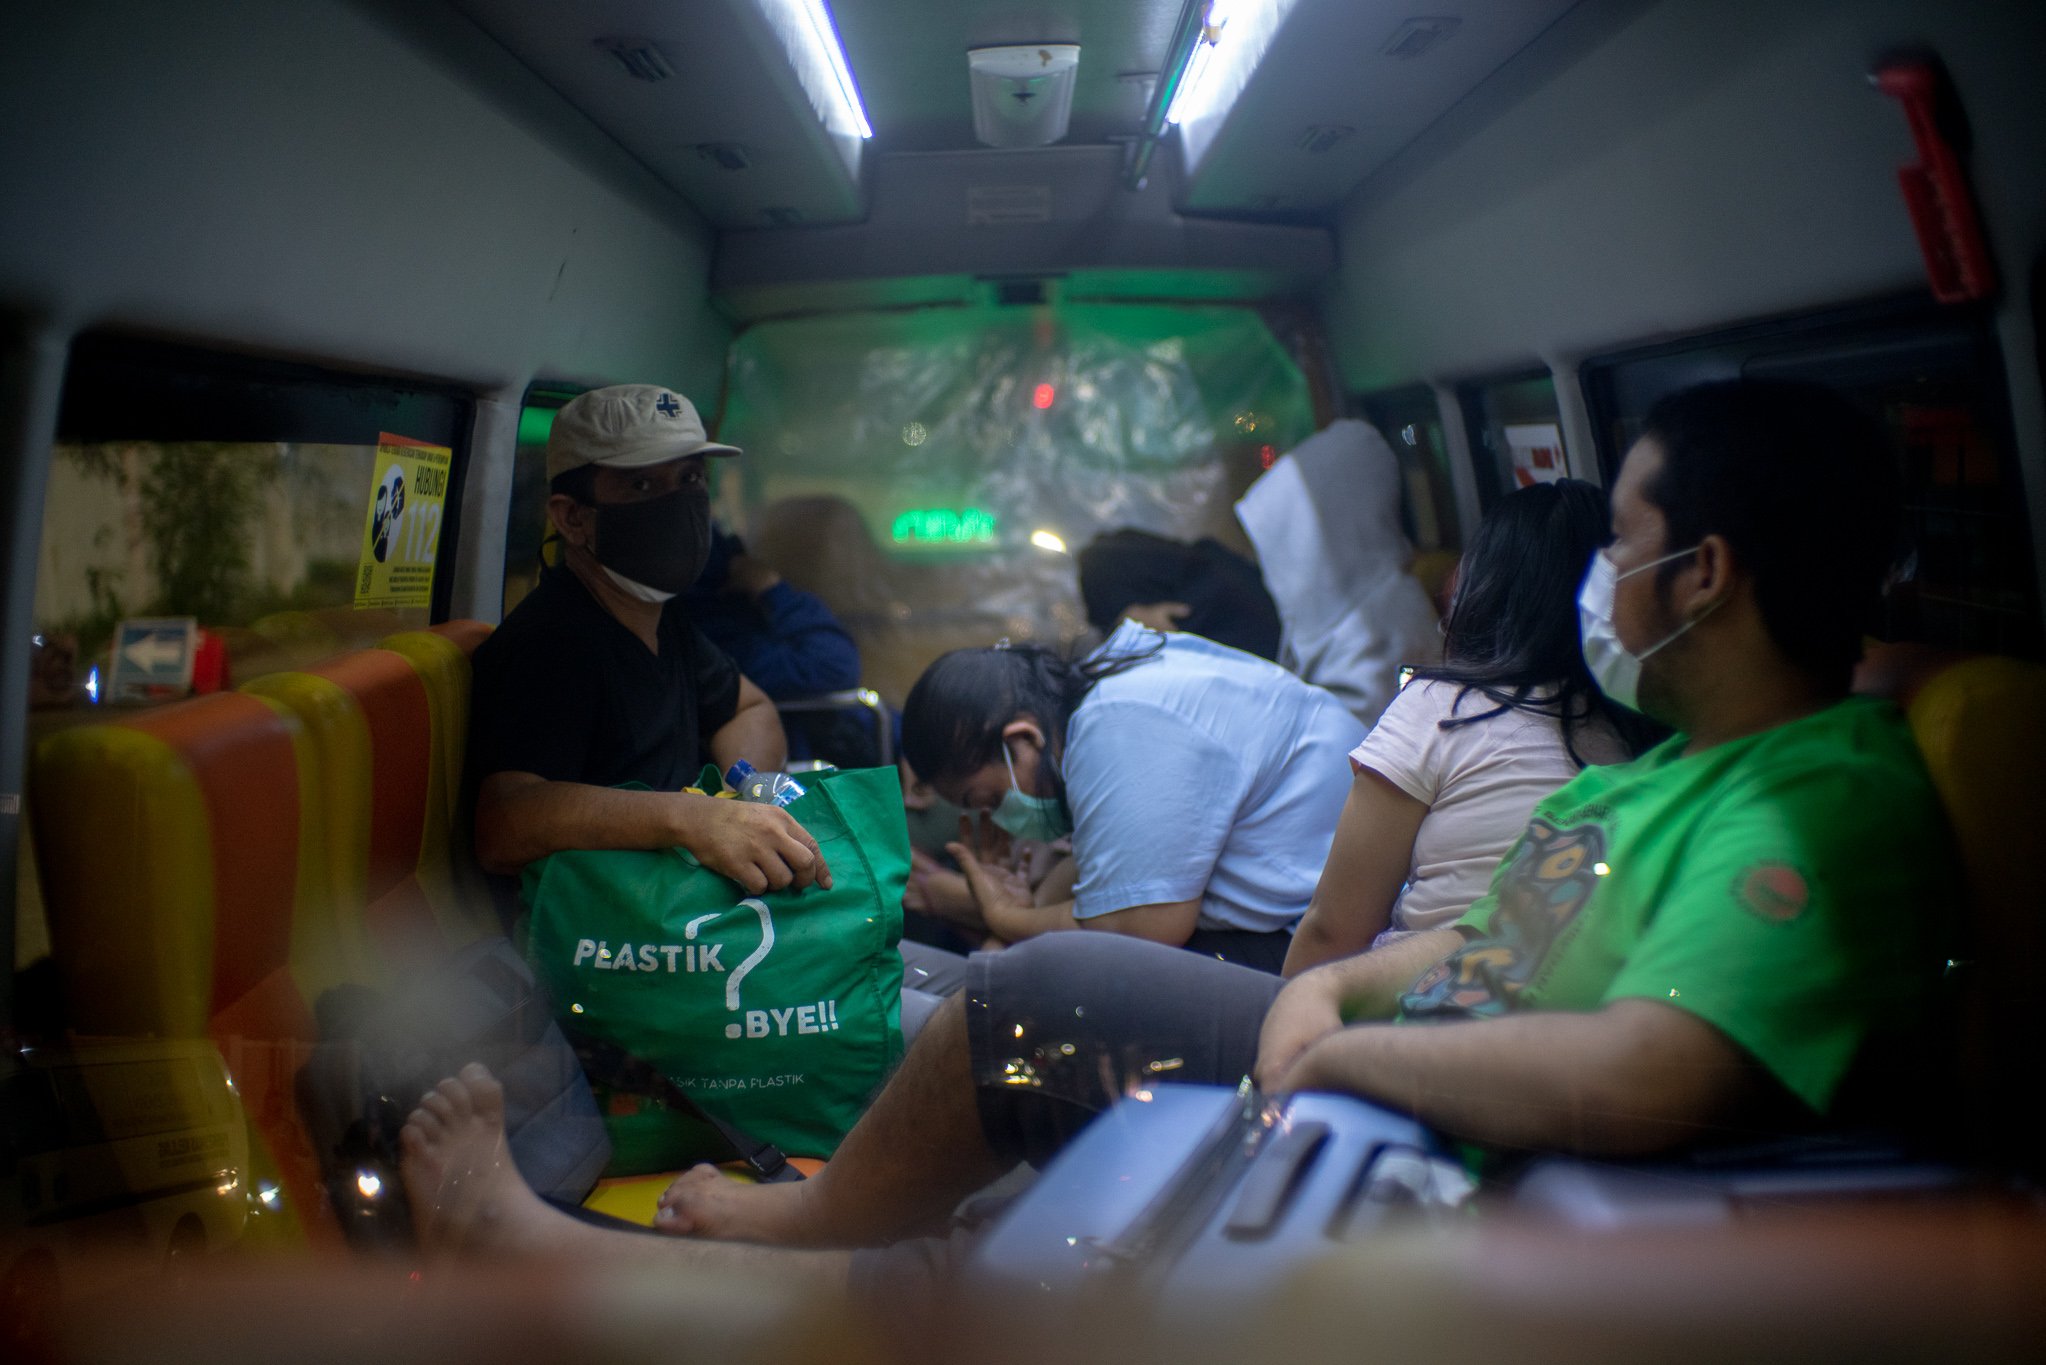 Sejumlah pasien terkonfirmasi Covid-19 menunggu antrean di dalam Bus Sekolah di Rumah Sakit Darurat COVID-19 (RSDC) Wisma Atlet Kemayoran, Jakarta, Selasa (15/6/2021). Menurut Koordinator RSDC Wisma Atlet Kemayoran Mayjen TNI Tugas Ratmono, pihaknya menambah jumlah kapasitas tempat tidur menjadi 7.394 dari 5.994 akibat lonjakan pasien positif COVID-19 di wilayah DKI Jakarta dan sekitarnya.